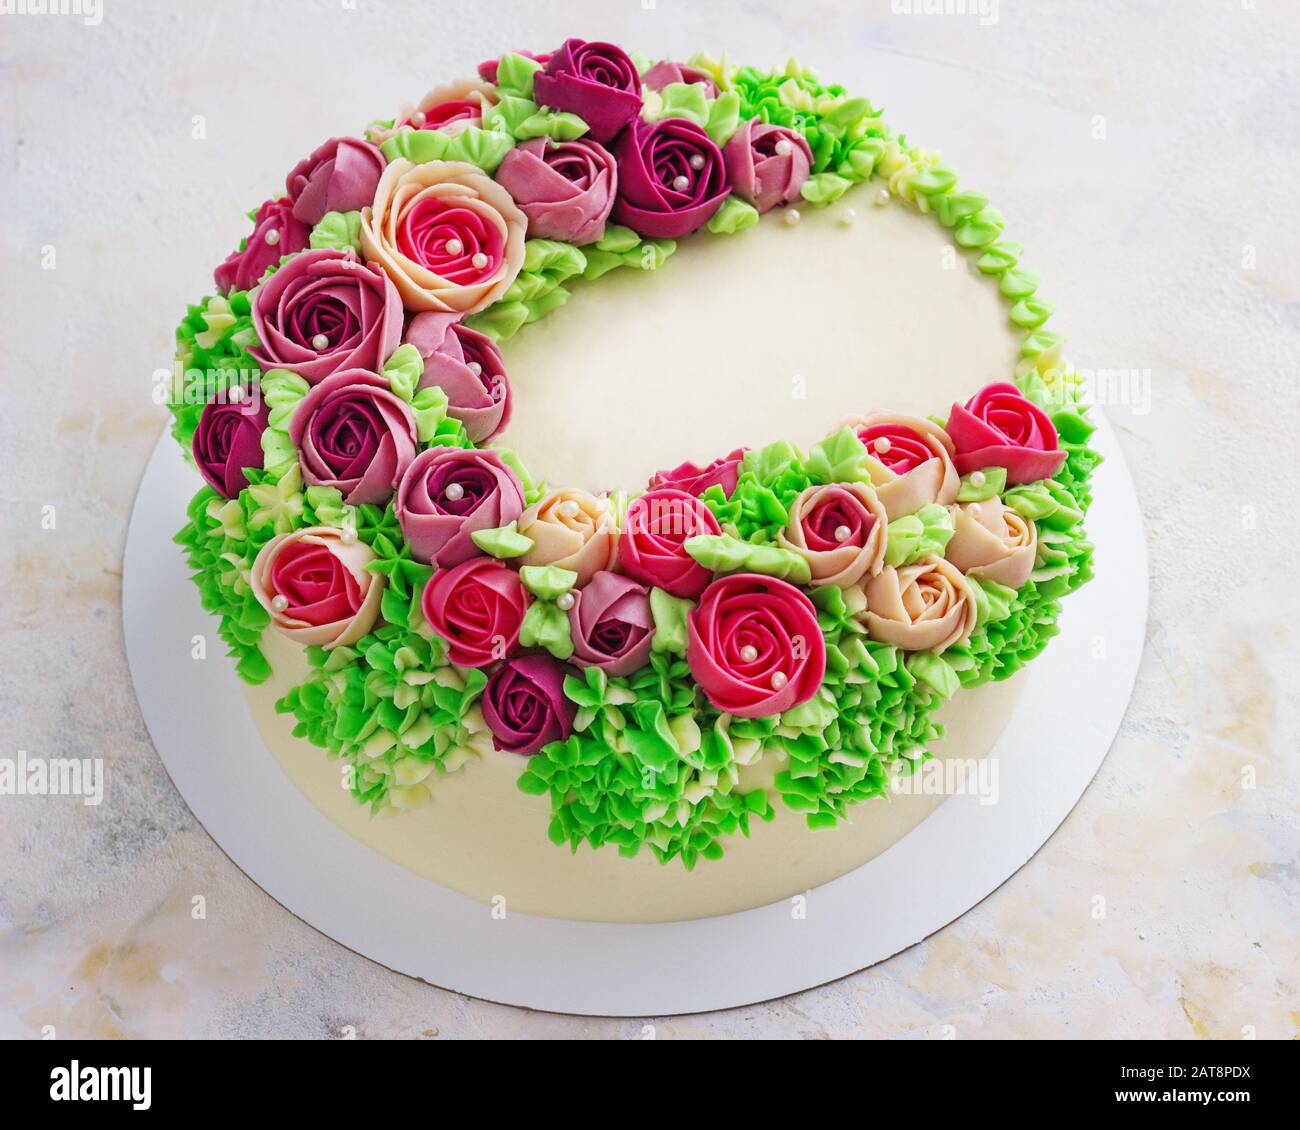 Gâteau blanc festif lumineux avec fleurs lumineuses faites de la crème, un gâteau de mariage, pour une femme. Banque D'Images